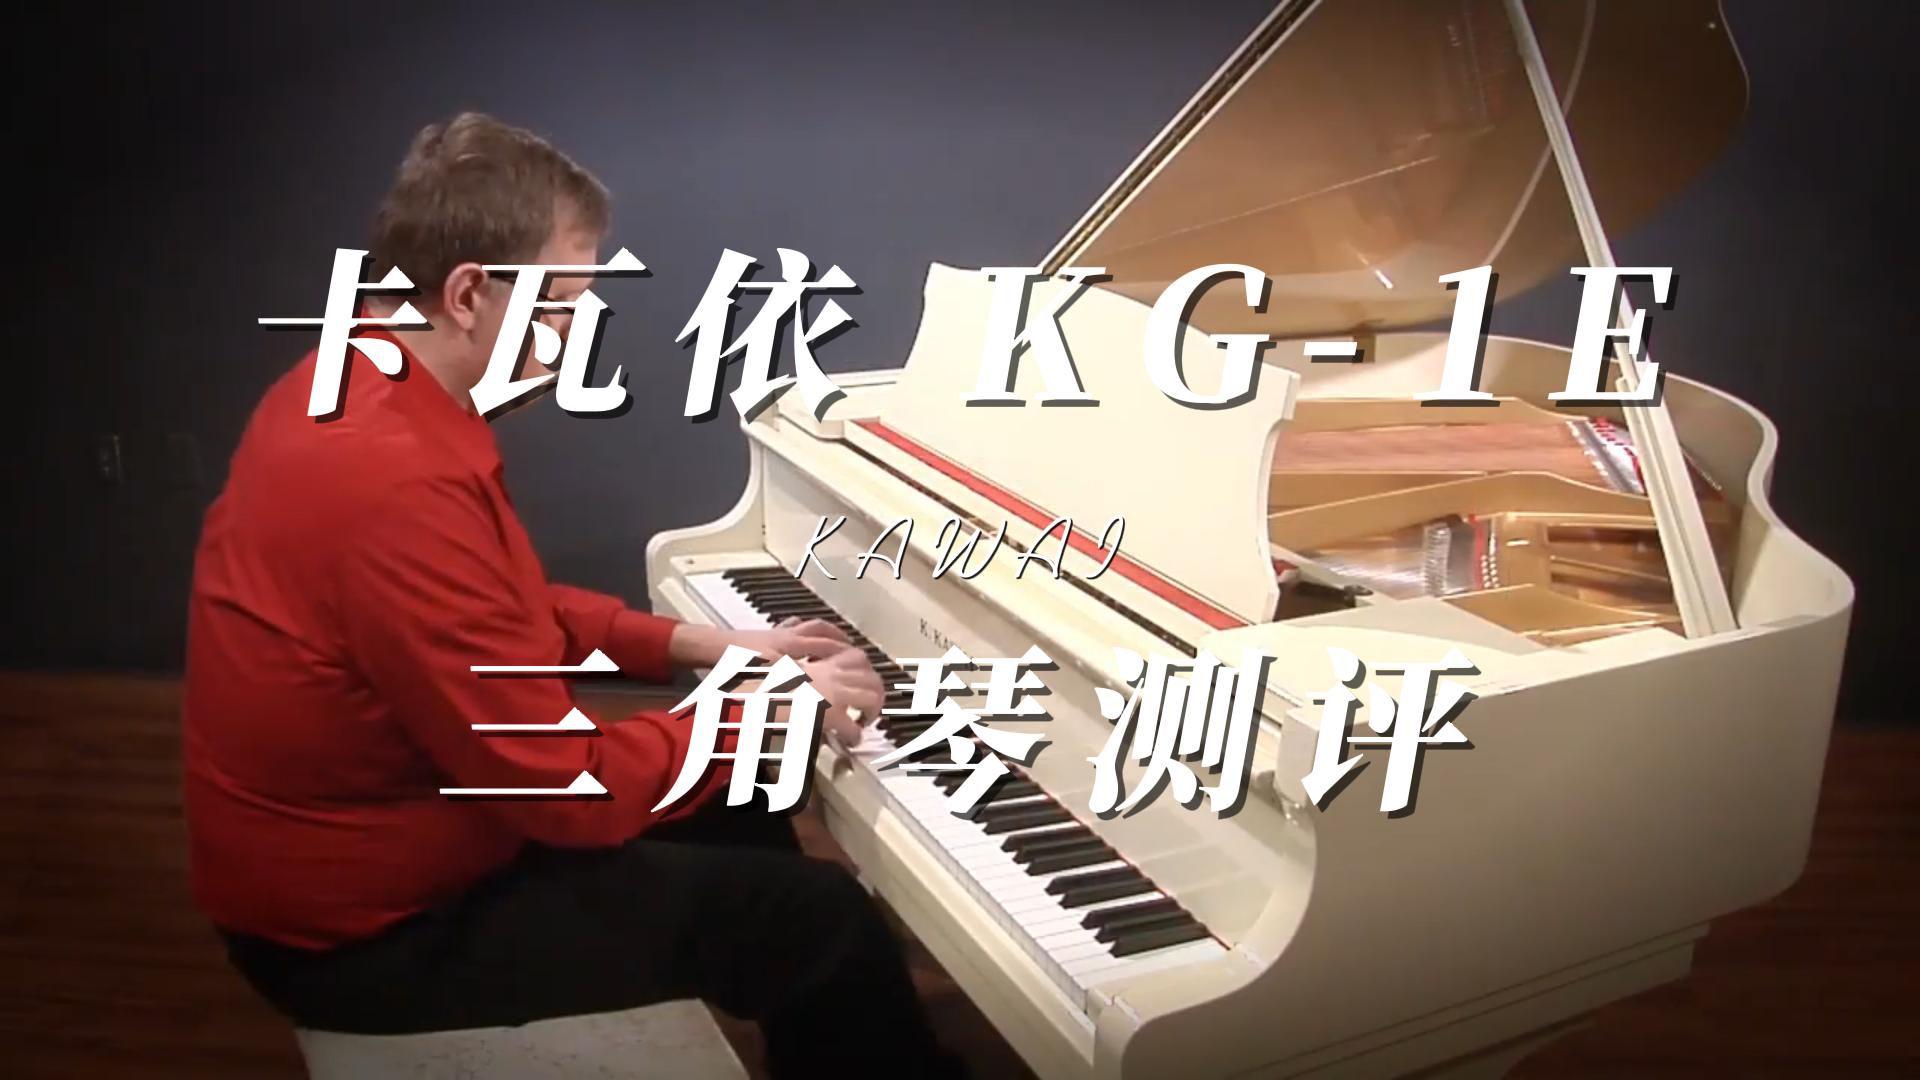 KAWAI 卡瓦依KG-1E三角钢琴弹奏测评-柏通琴行整理